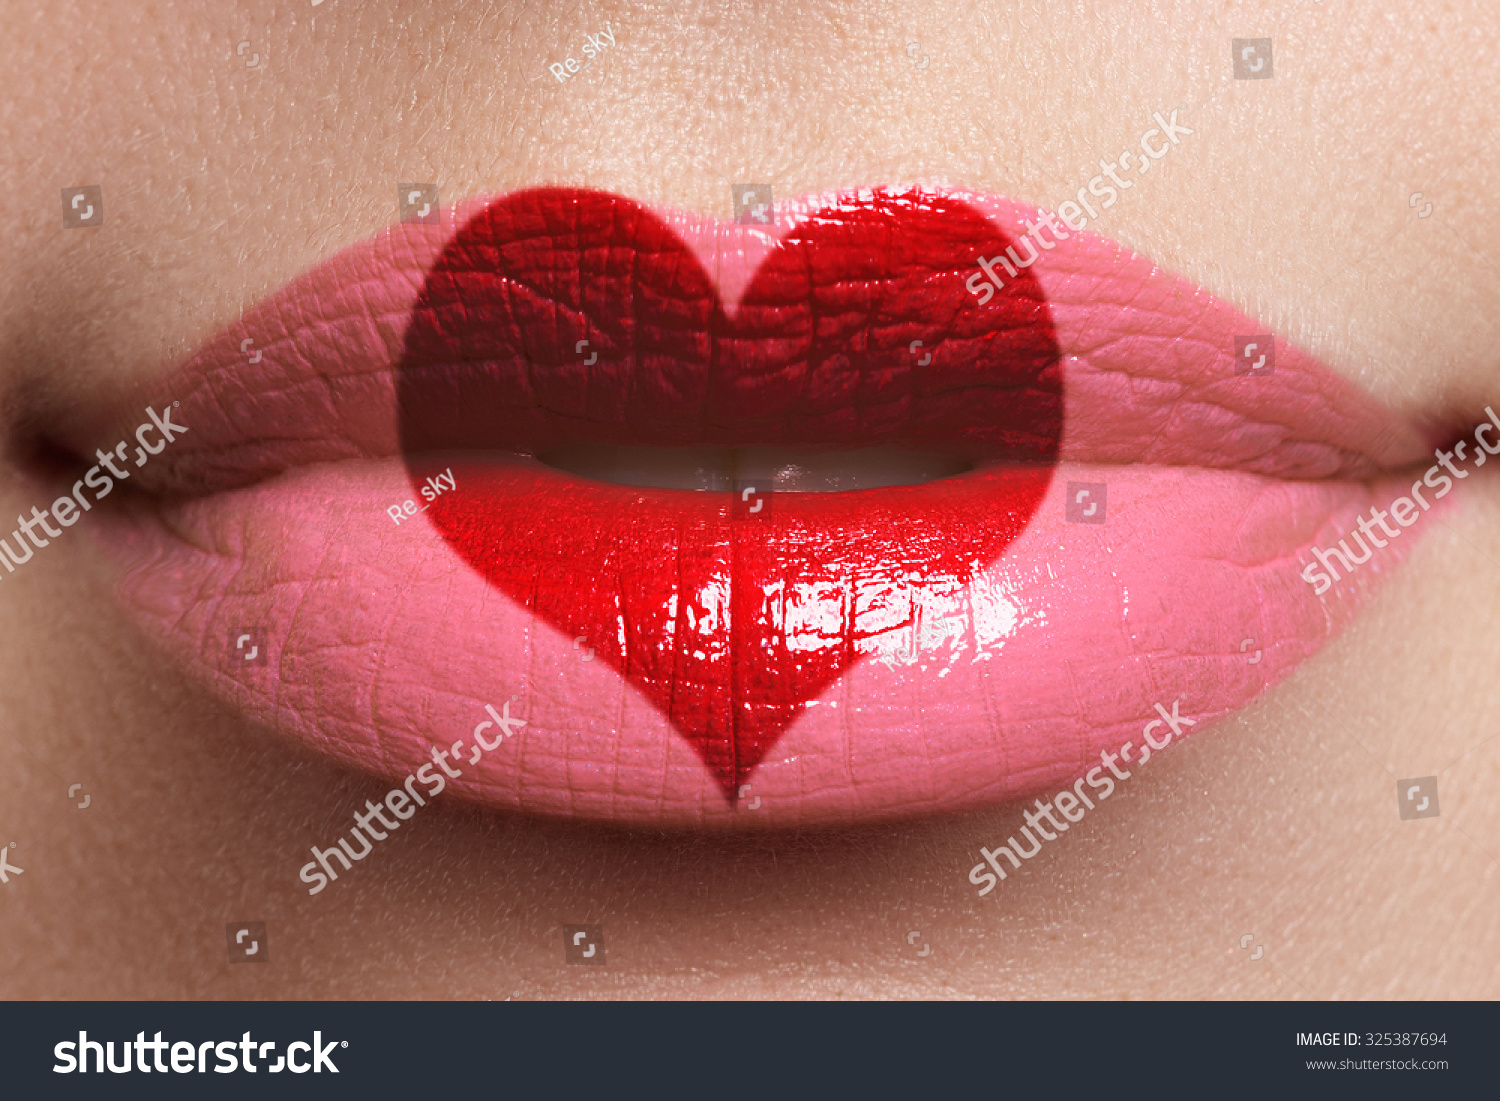 Heart Kiss On Lips Beauty Sexy Stock Photo 325387694 ...